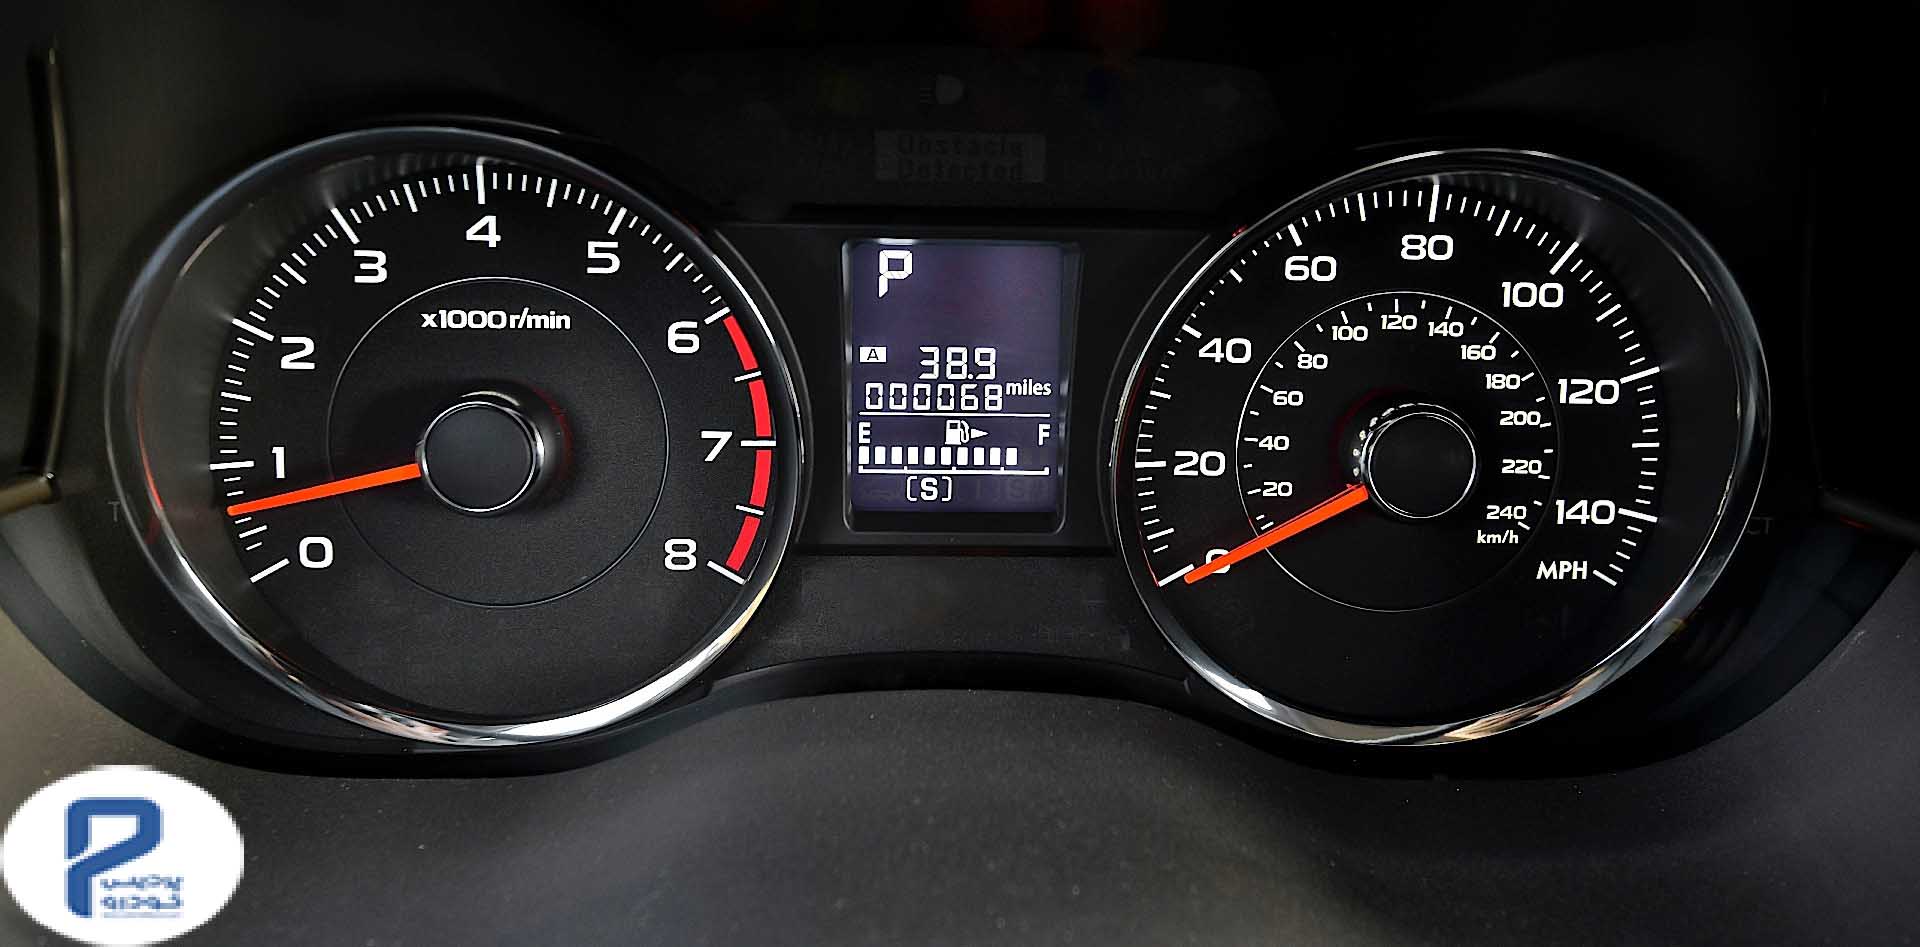 41- عکس داخل بررسی مشخصات فنی سوبارو فارستر-محصول جدید سیف خودرو